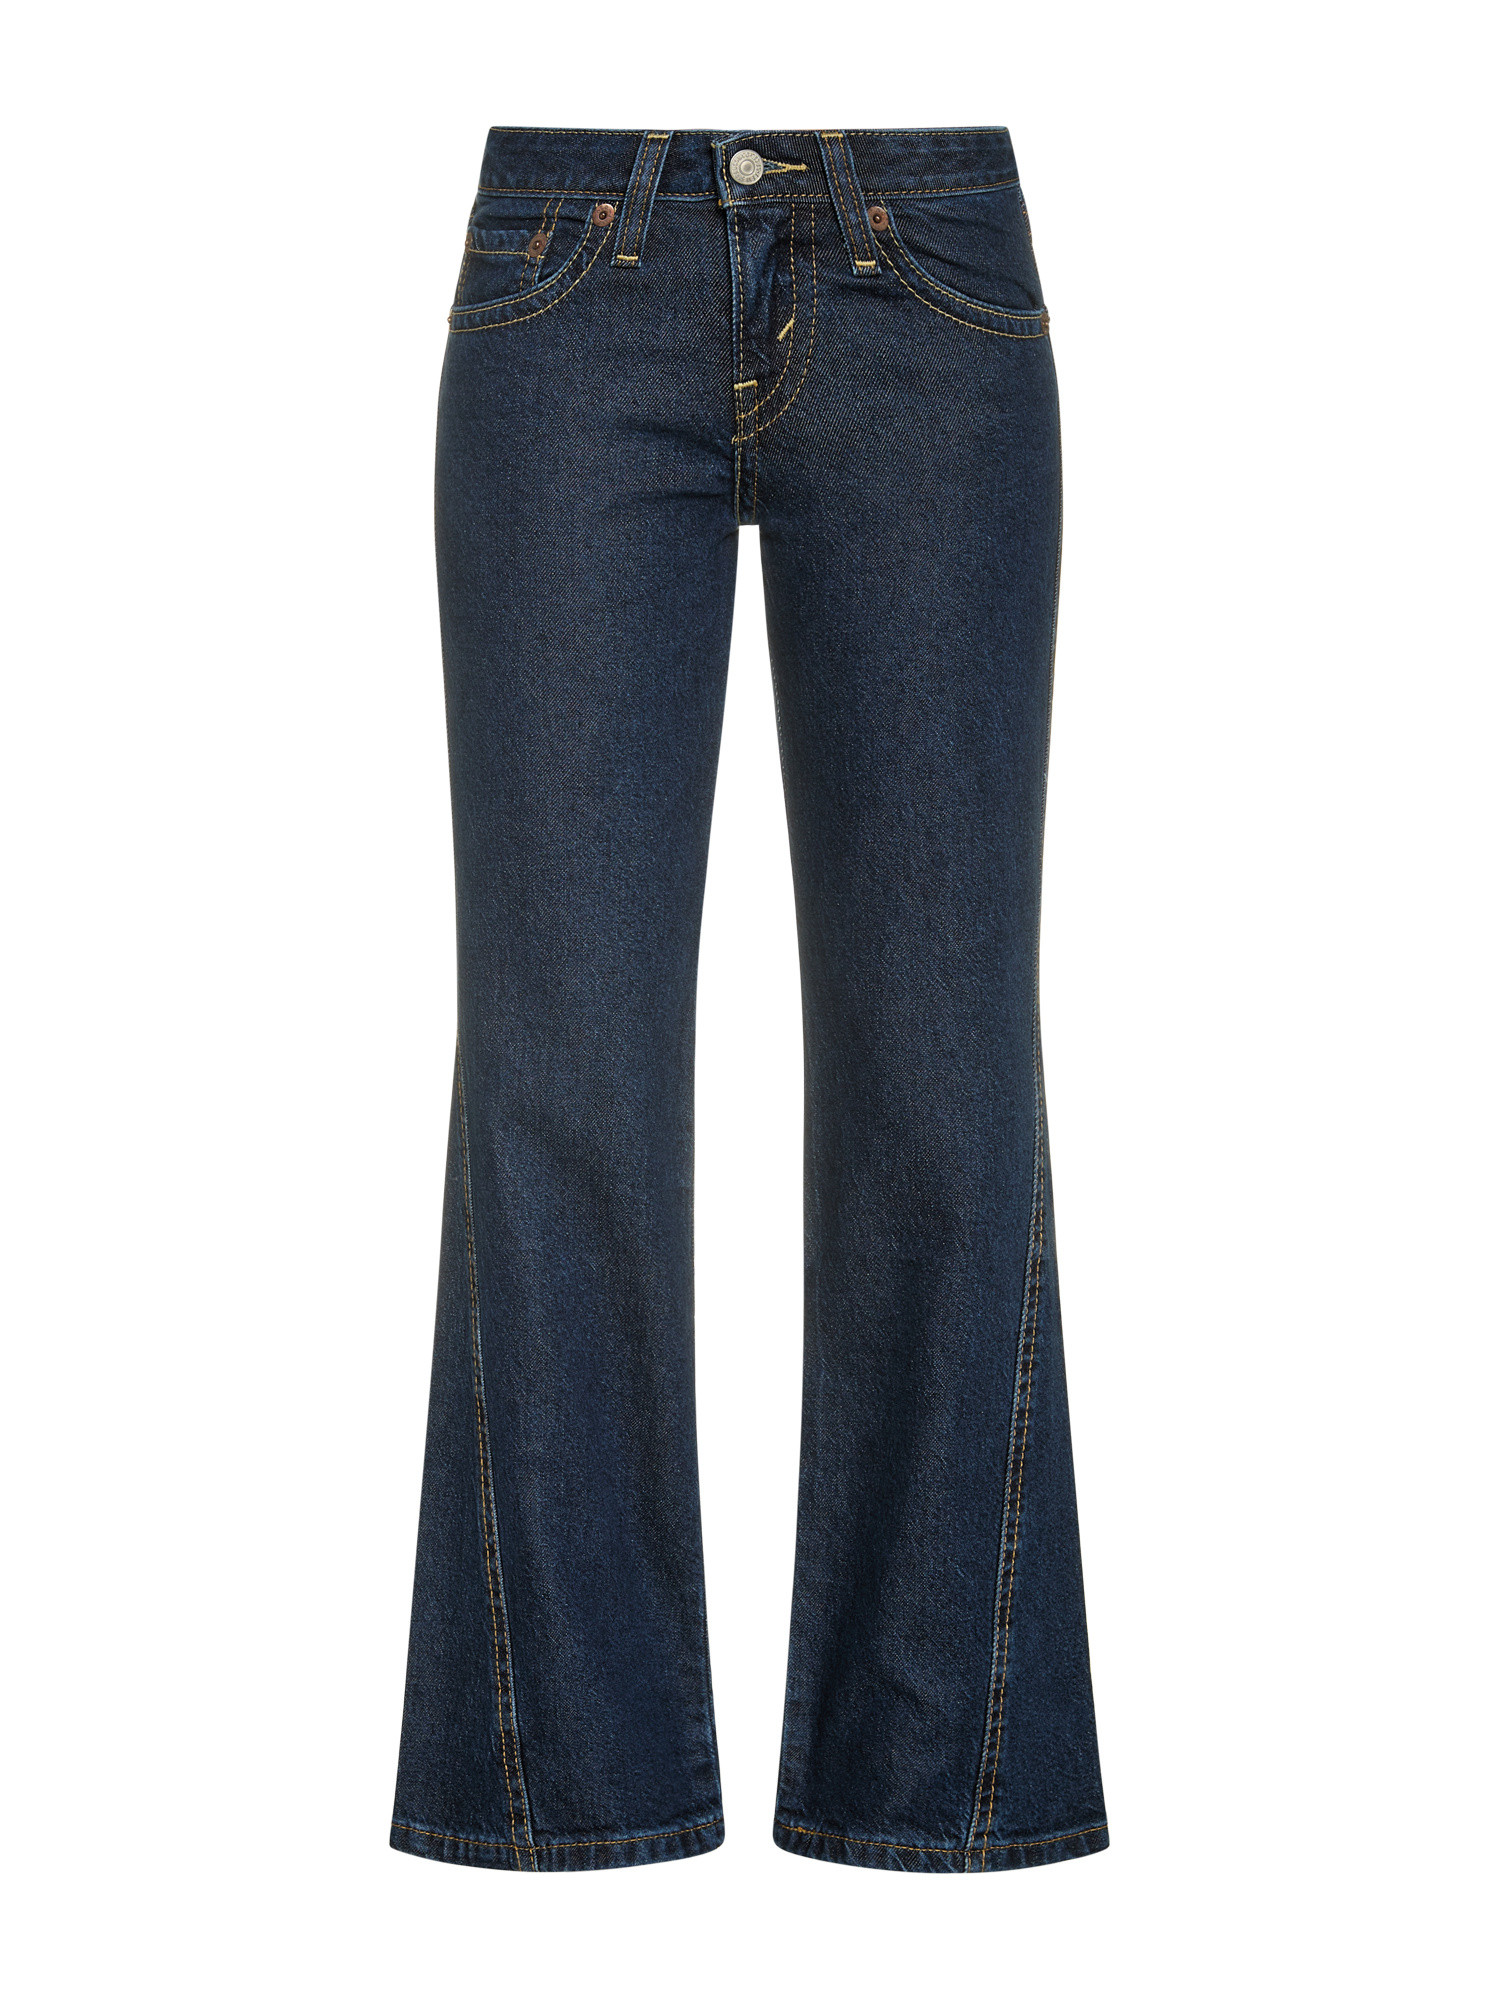 Levi's - Five pocket bootcut jeans, Blue, large image number 0